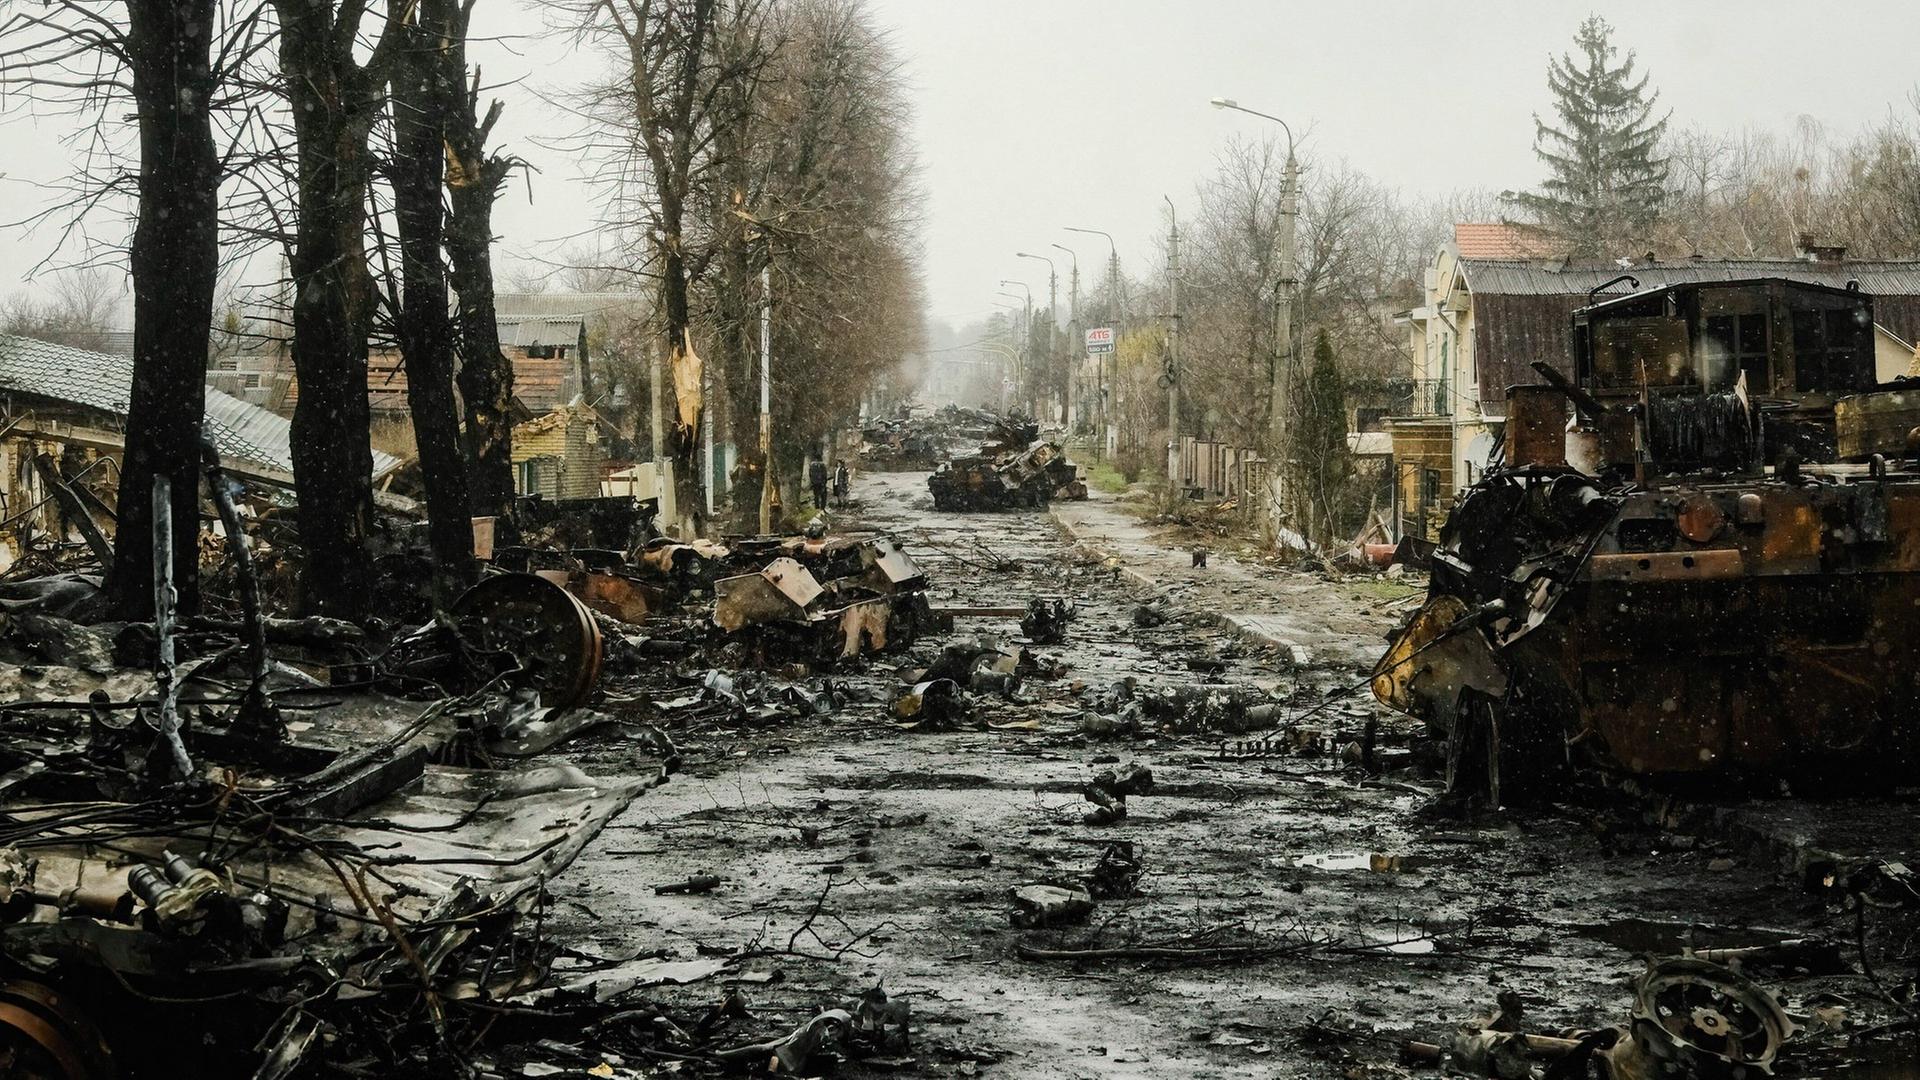 Trümmer von Kriegsgerät auf einer Dorfstraße, links vier durch einen Brand verkohlte Baumstämme, im Hintergrund am Straßenrand gehen zwei Menschen.